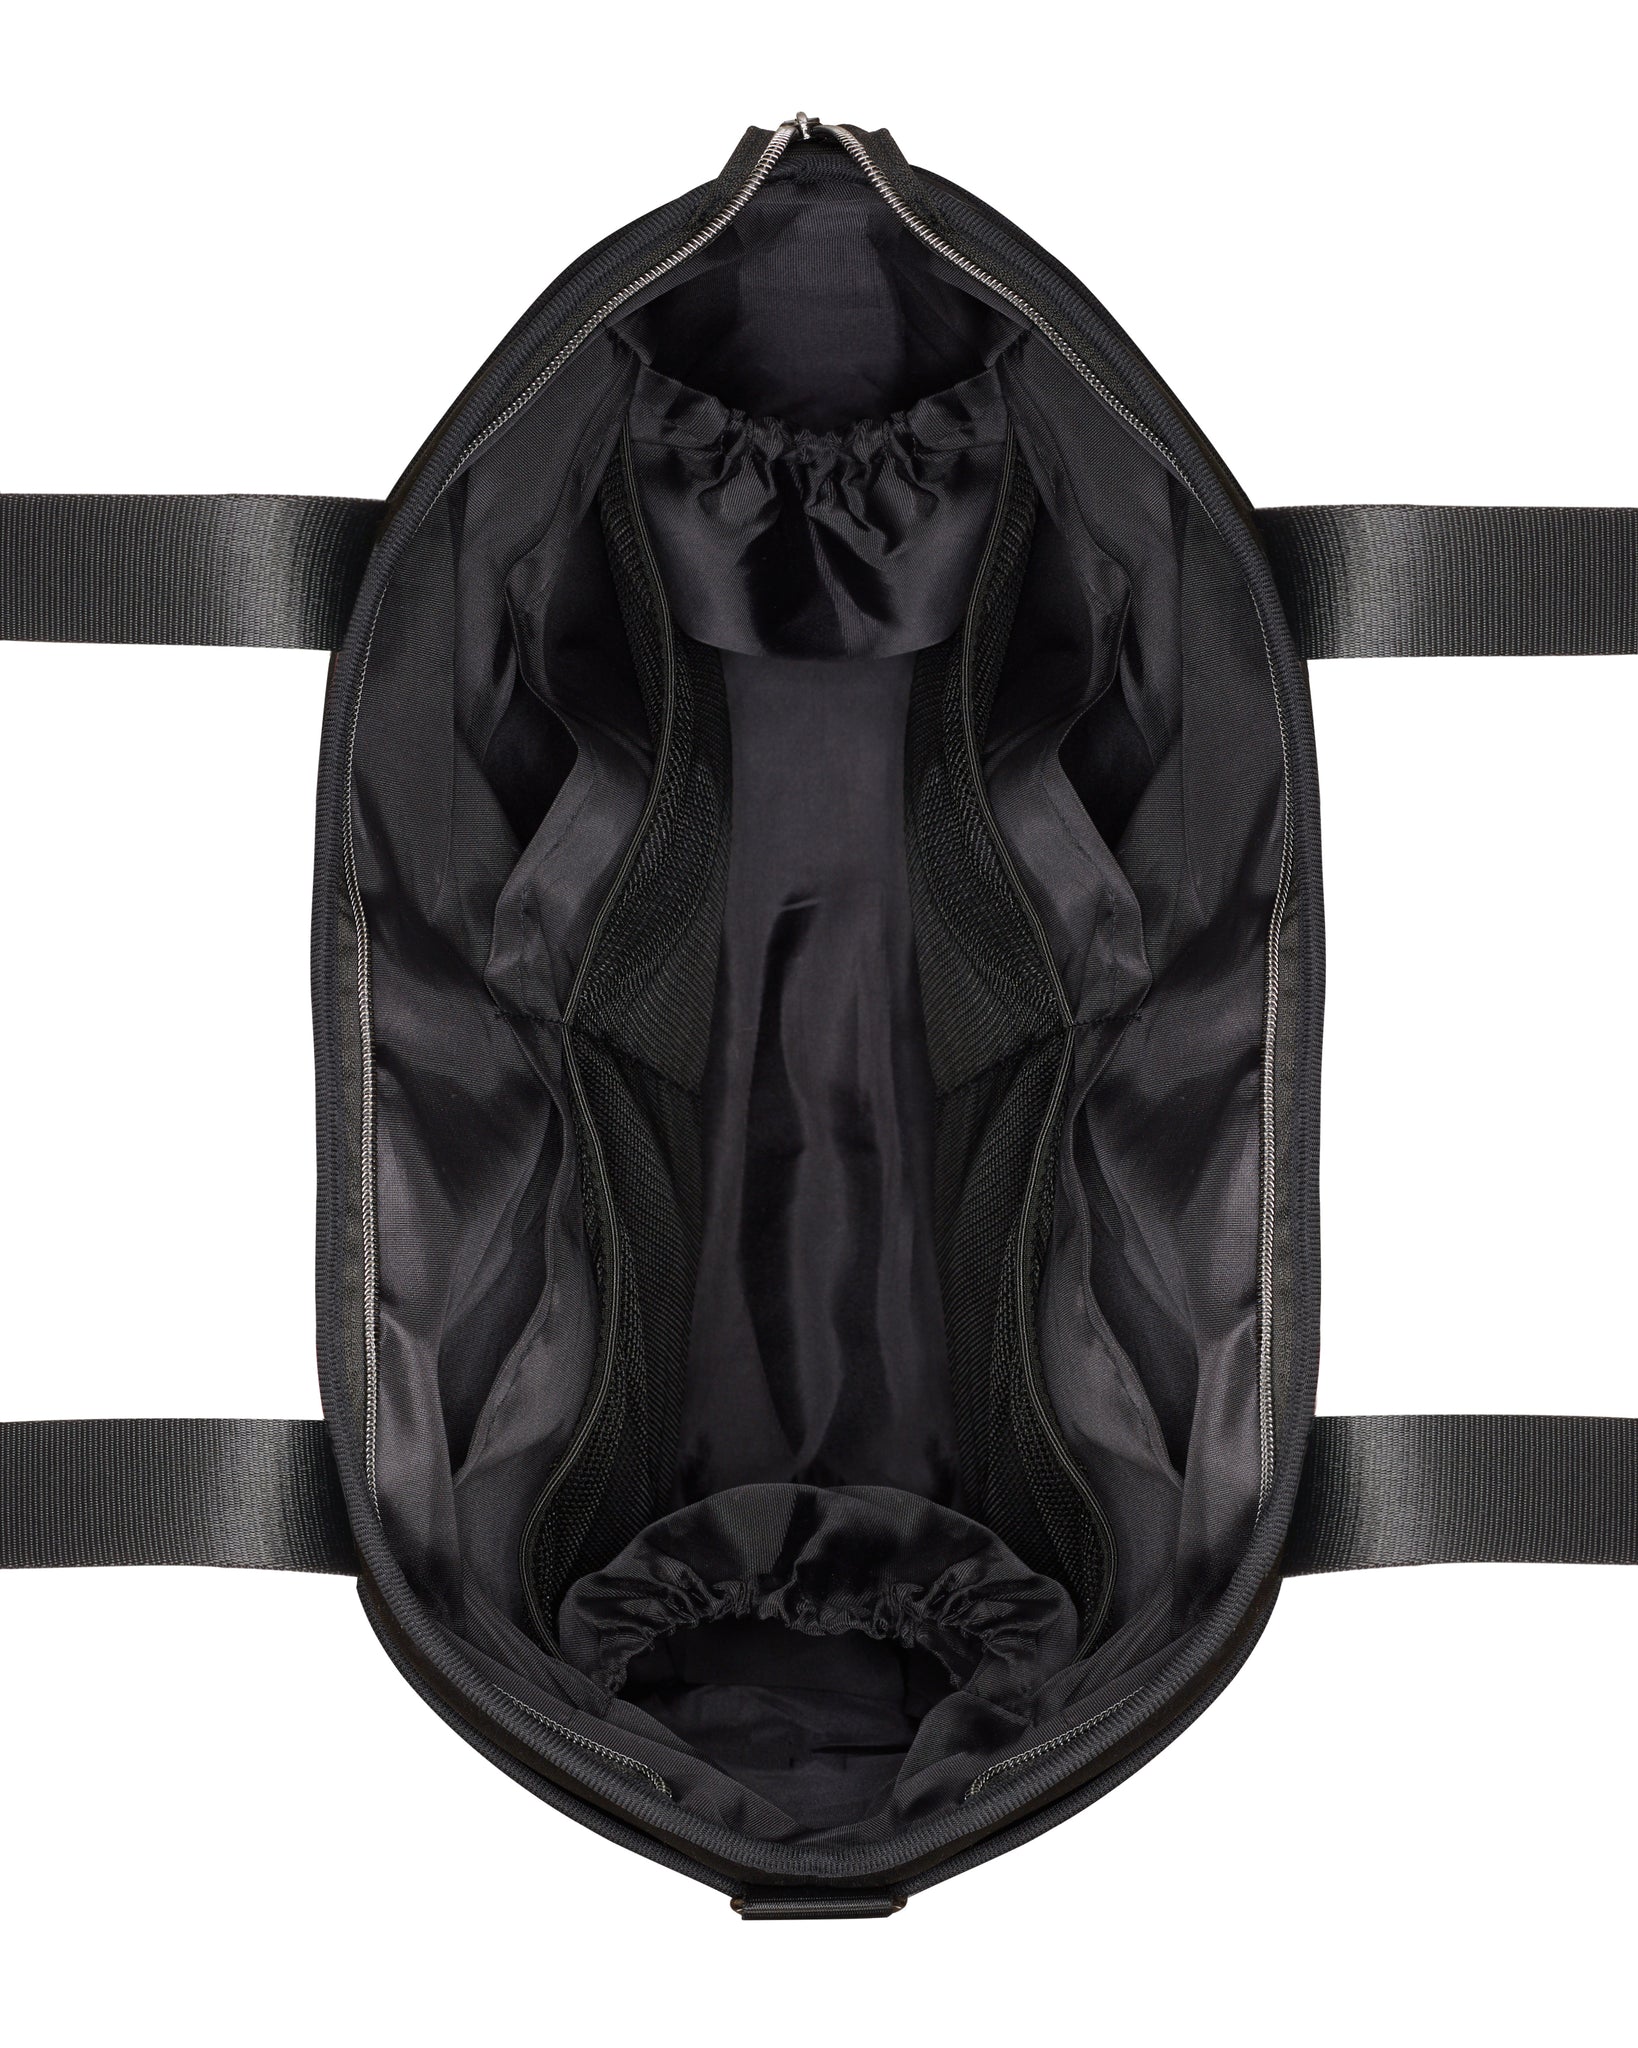 The Sunday Bag (BLACK) Neoprene Tote / Baby / Travel Bag – Prene